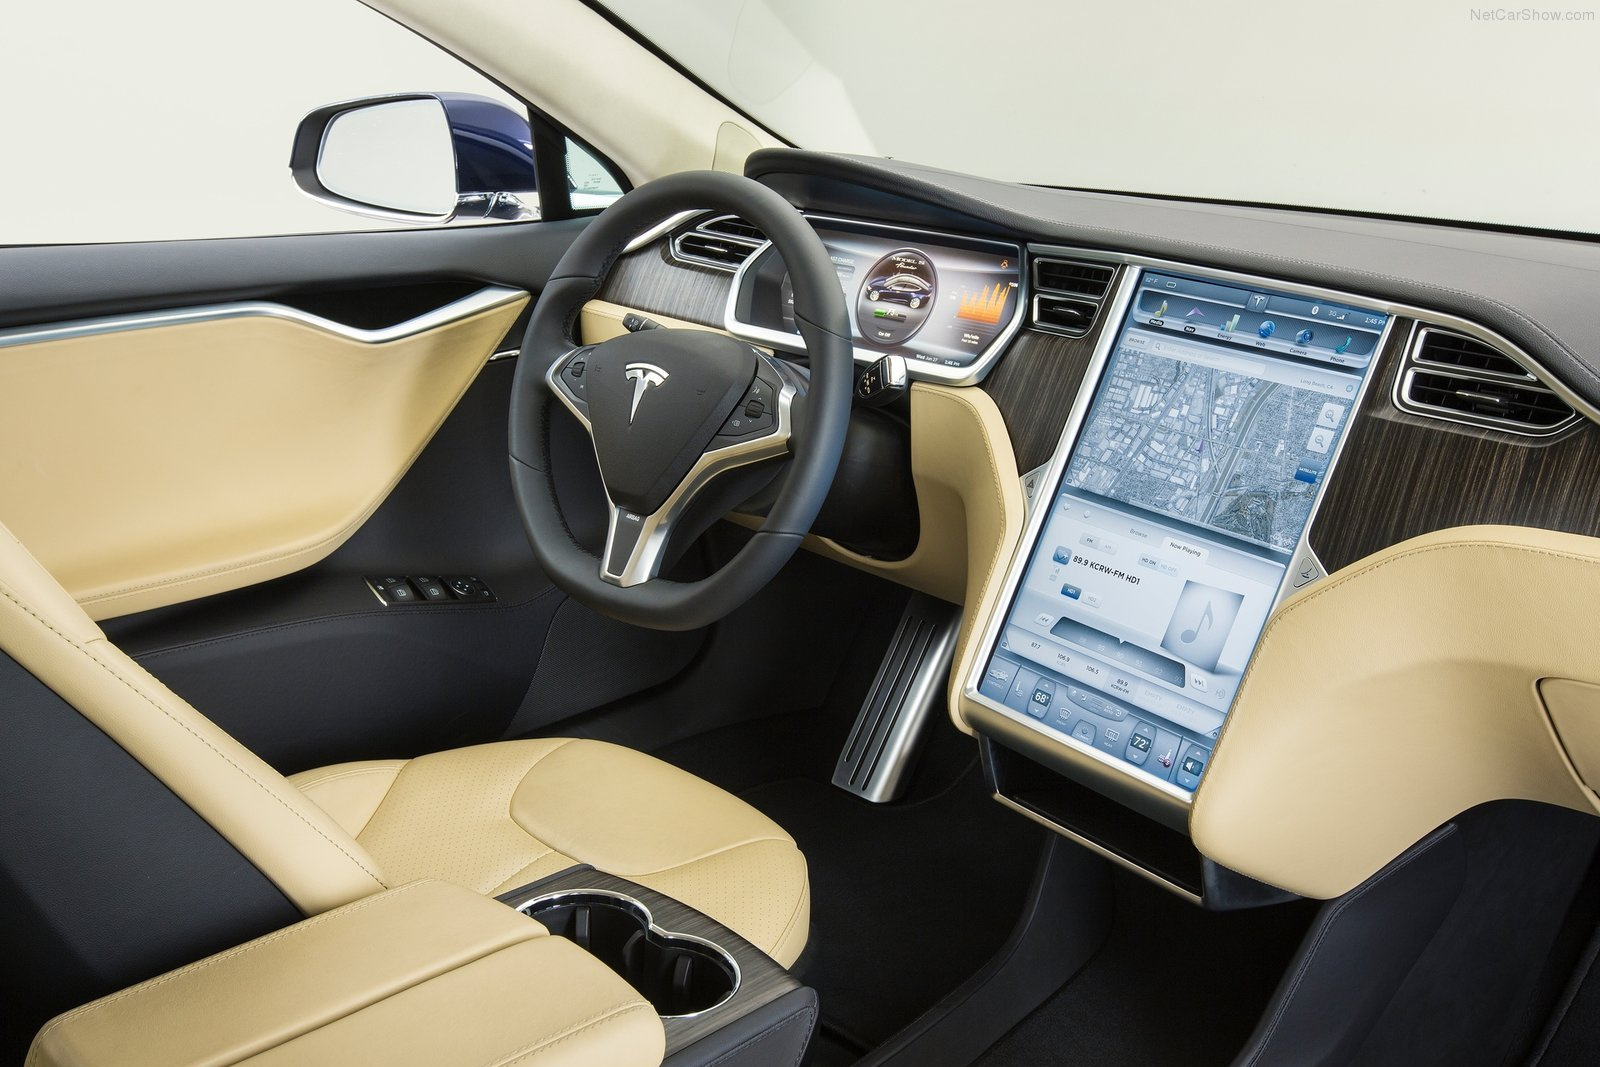 A jelenlegi tesla Model S-sel ellentétben az újban már vízszintes tájolású a központi érintőképernyő. Szórakoztatási célra ez a jobb, navigációra és kezelőfelületként a függőleges lenne. És, ha elfordíthatóra csinálnák?